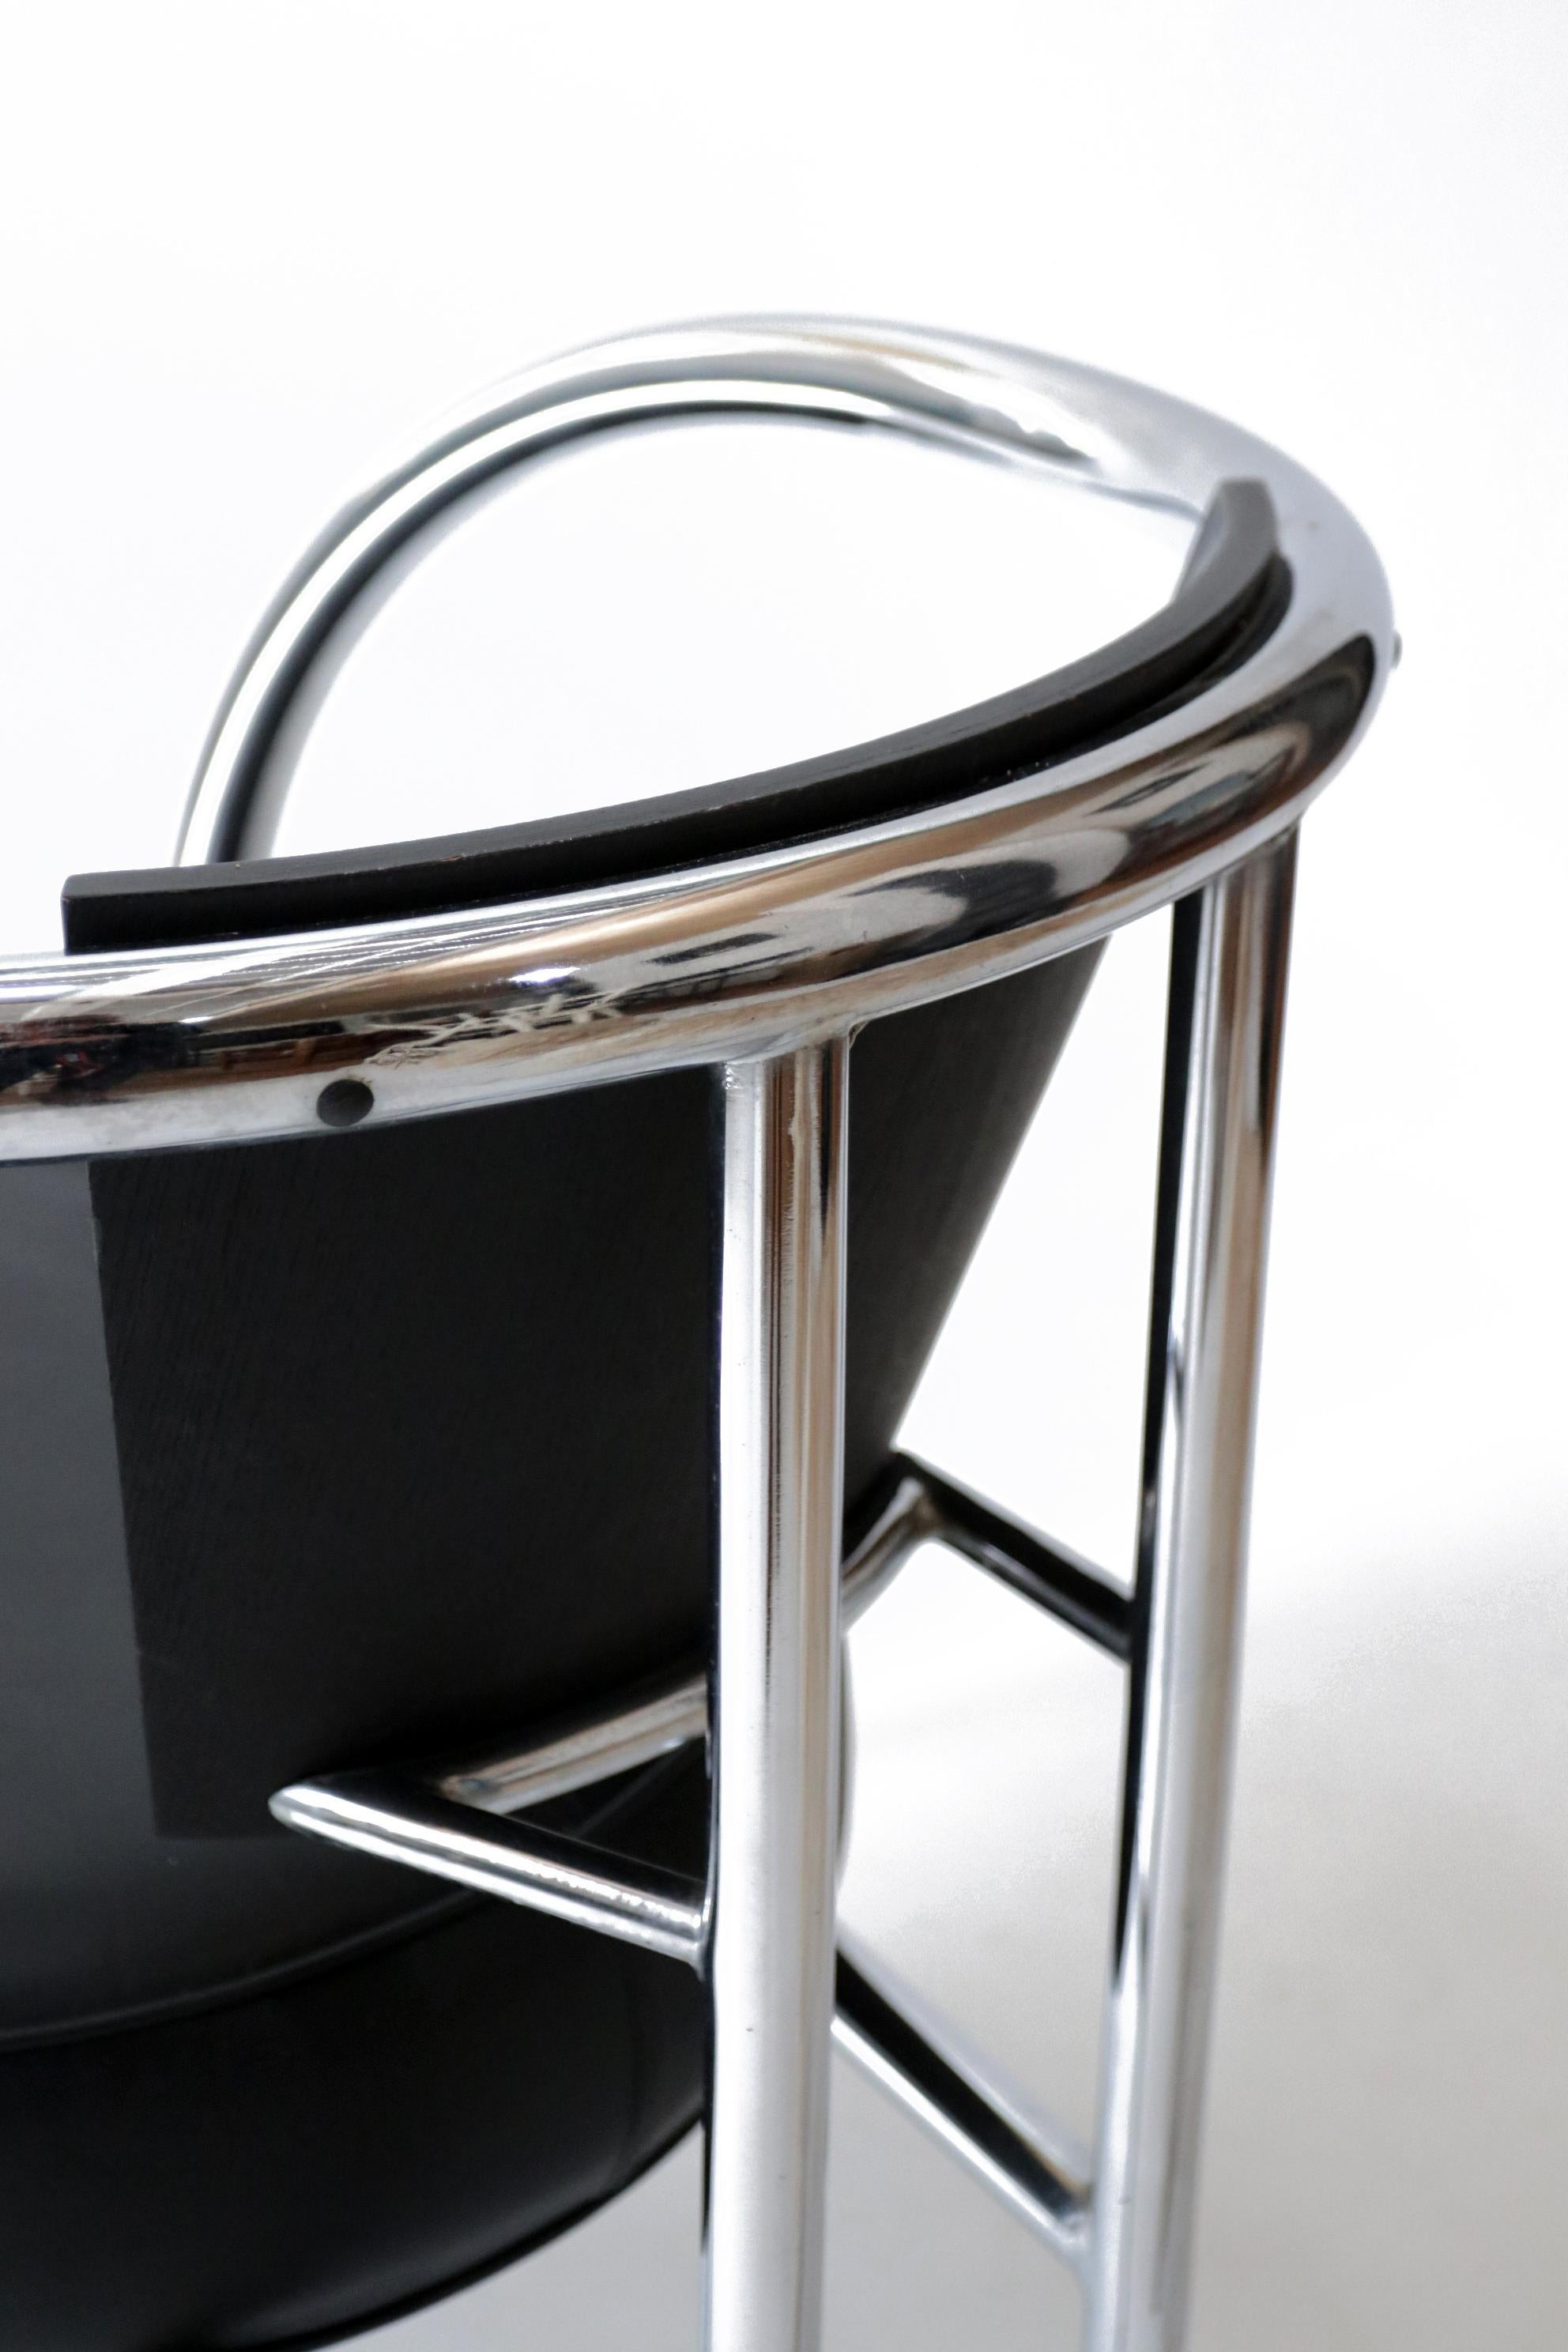 Schöner Sessel im Design der 1980er Jahre mit dickem verchromtem Rohrgestell, schwarzem Ledersitz und geschwungener Holzlehne. 
Höchstwahrscheinlich in Italien hergestellt.